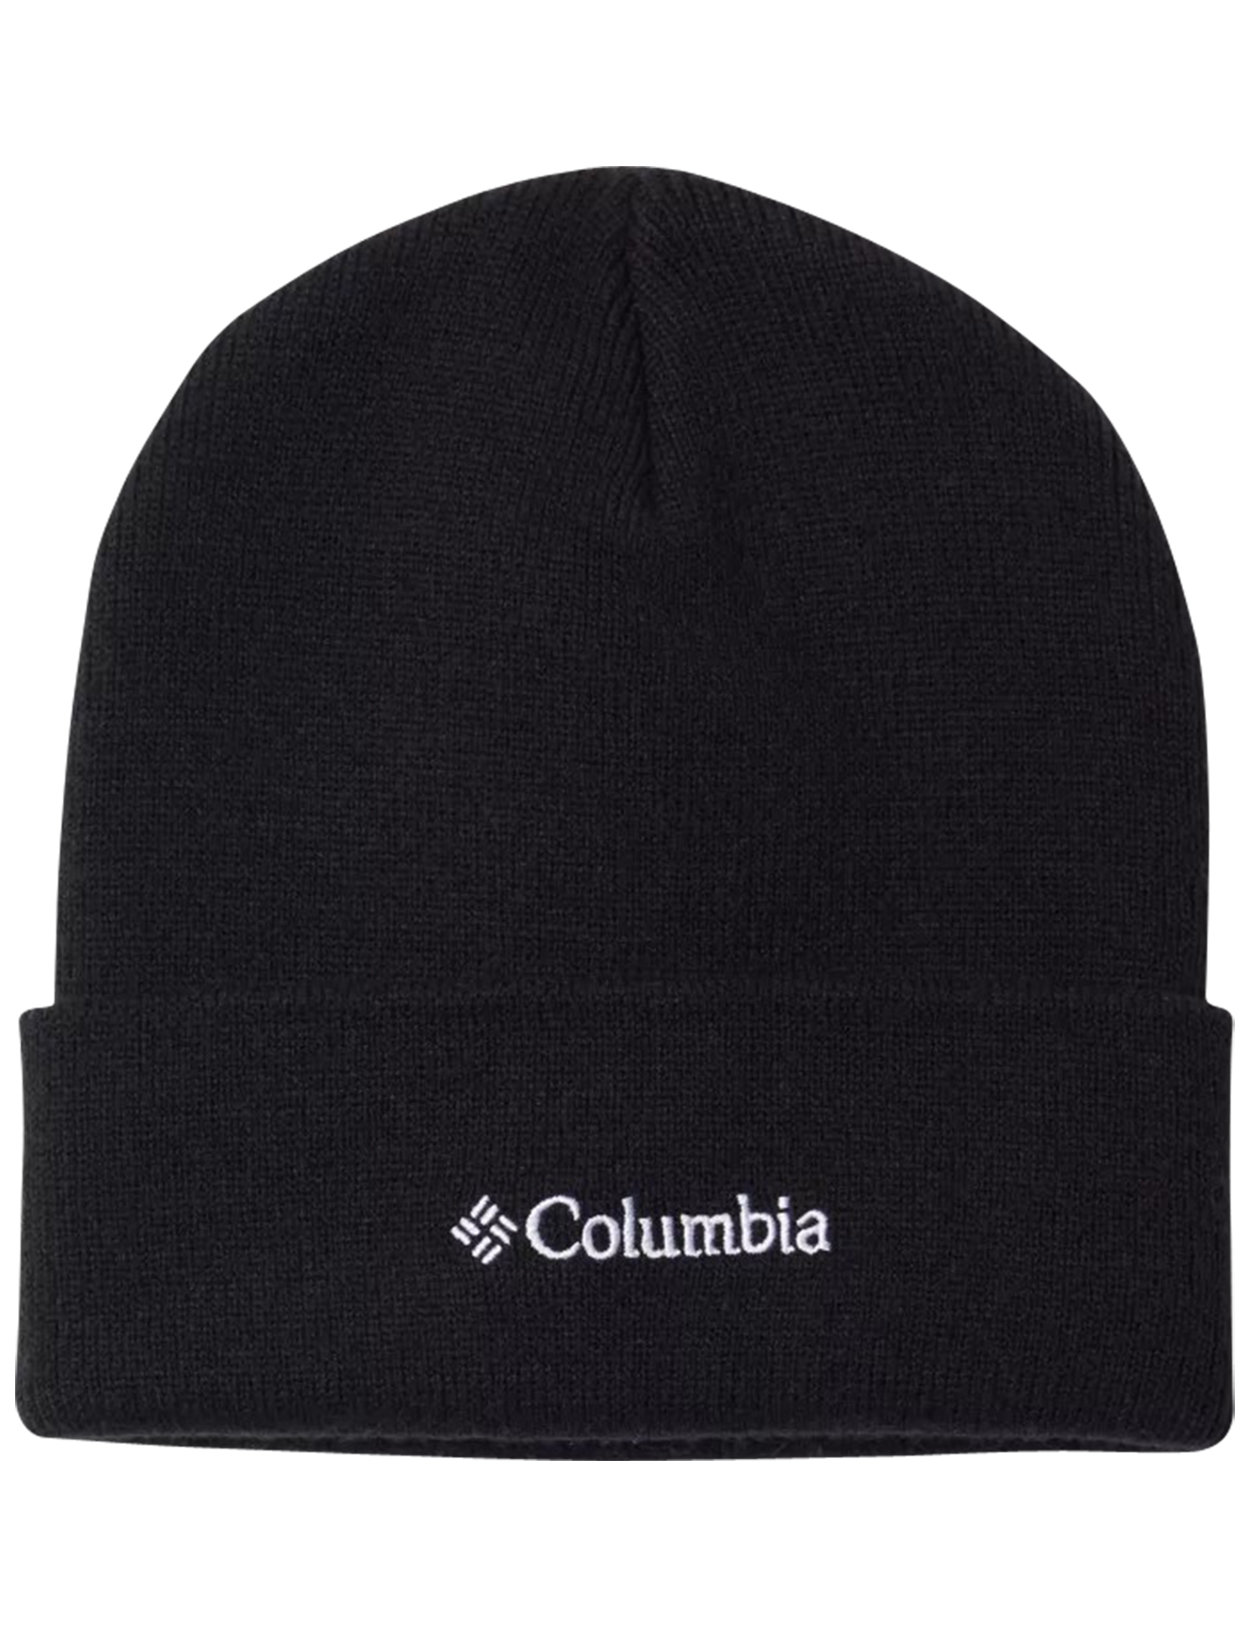 bonnet columbia noir